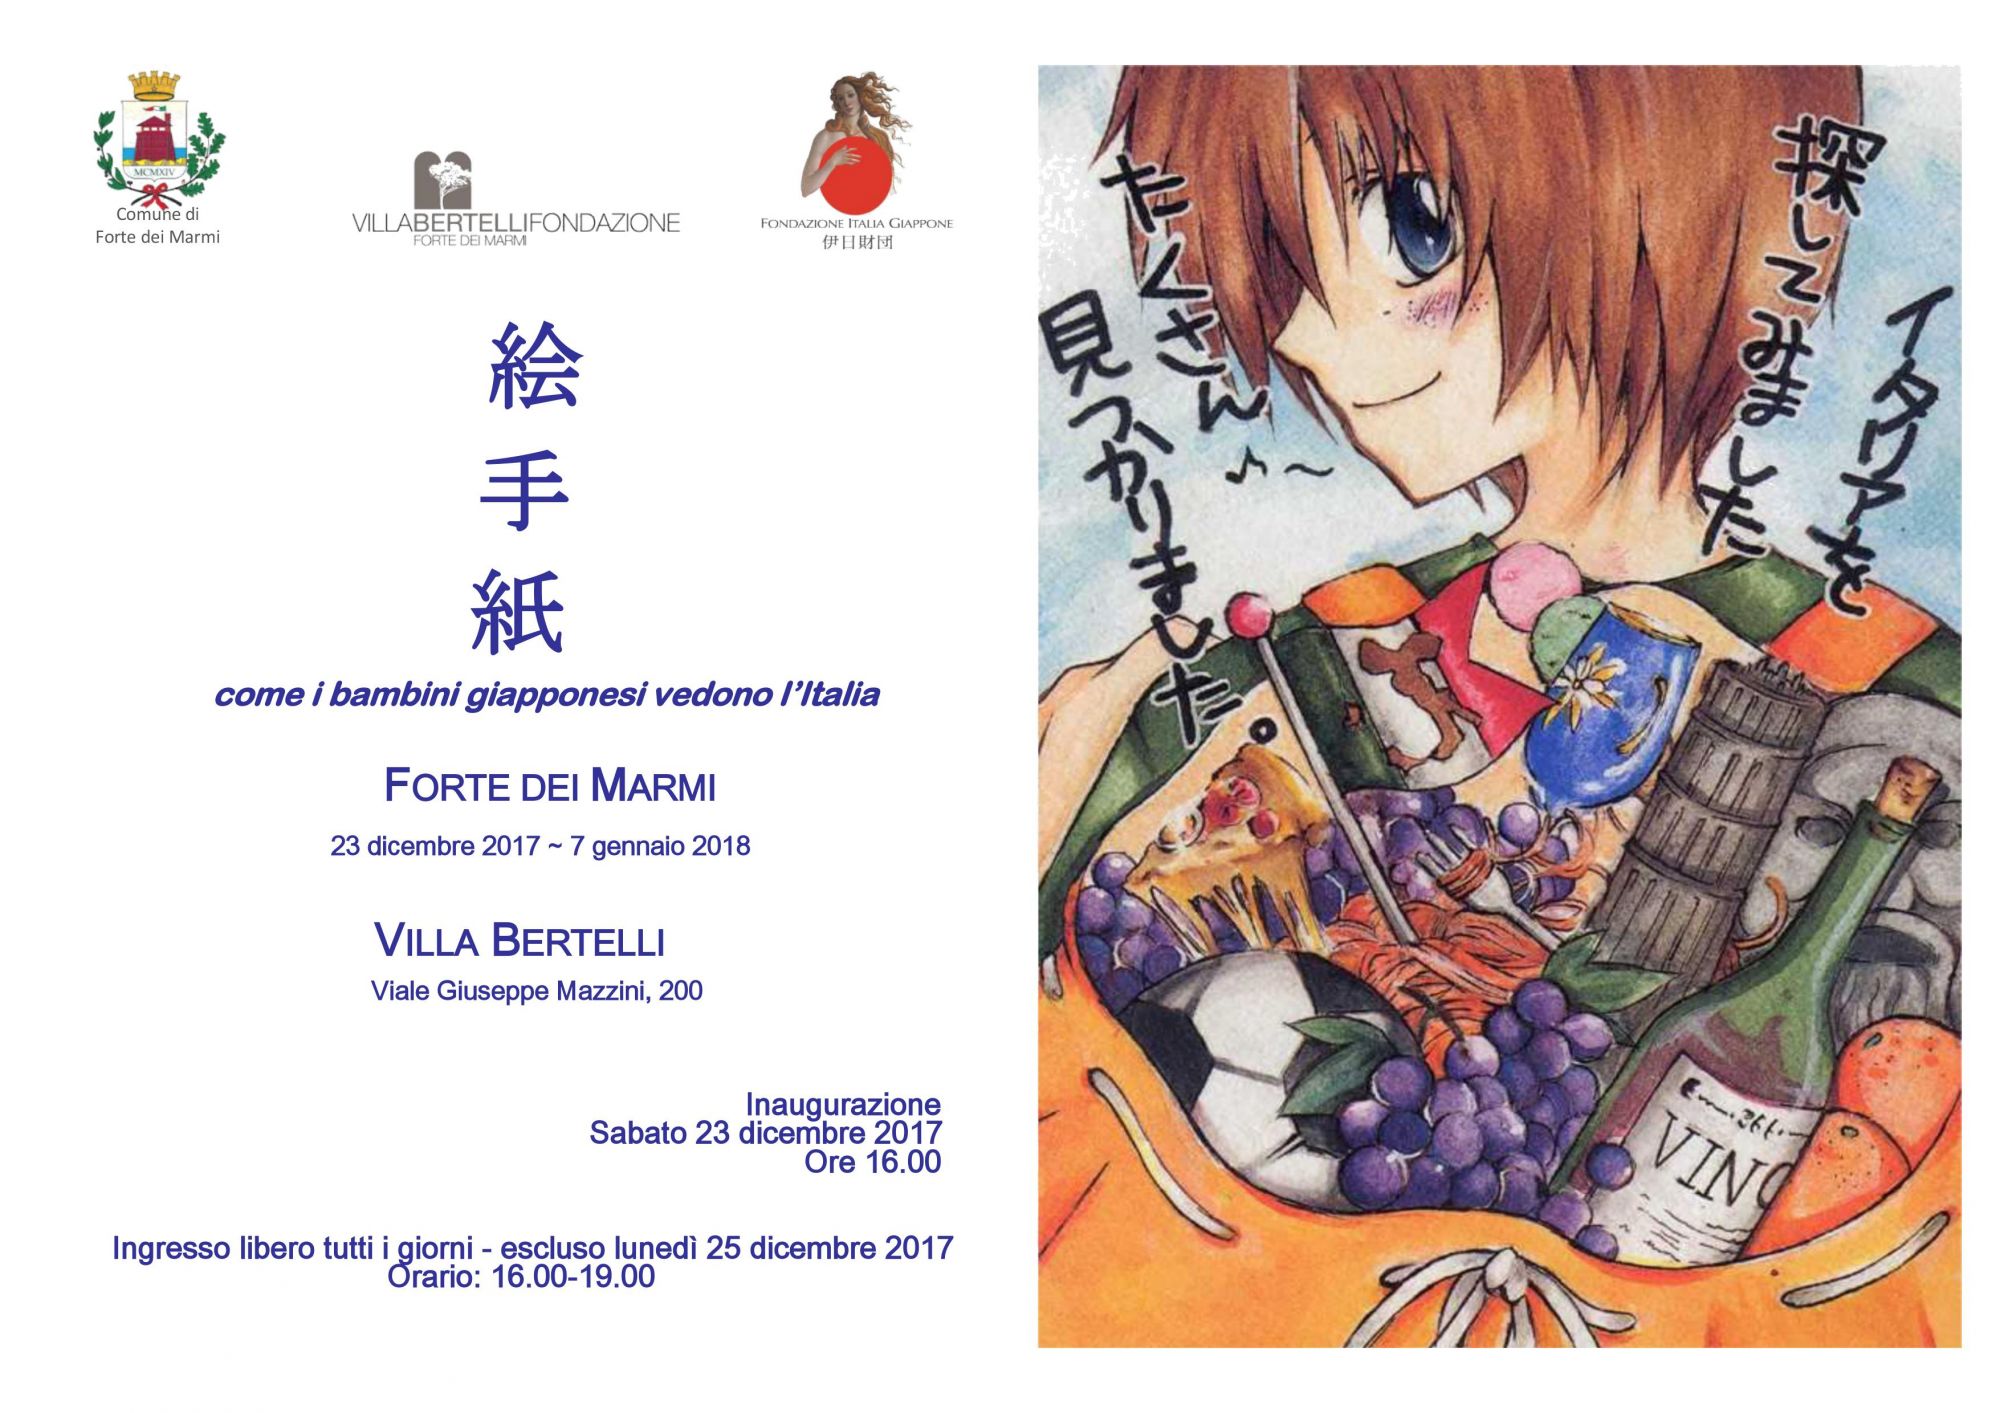 Le scuole primarie in visita alla mostra “Come i bambini giapponesi vedono l’Italia”